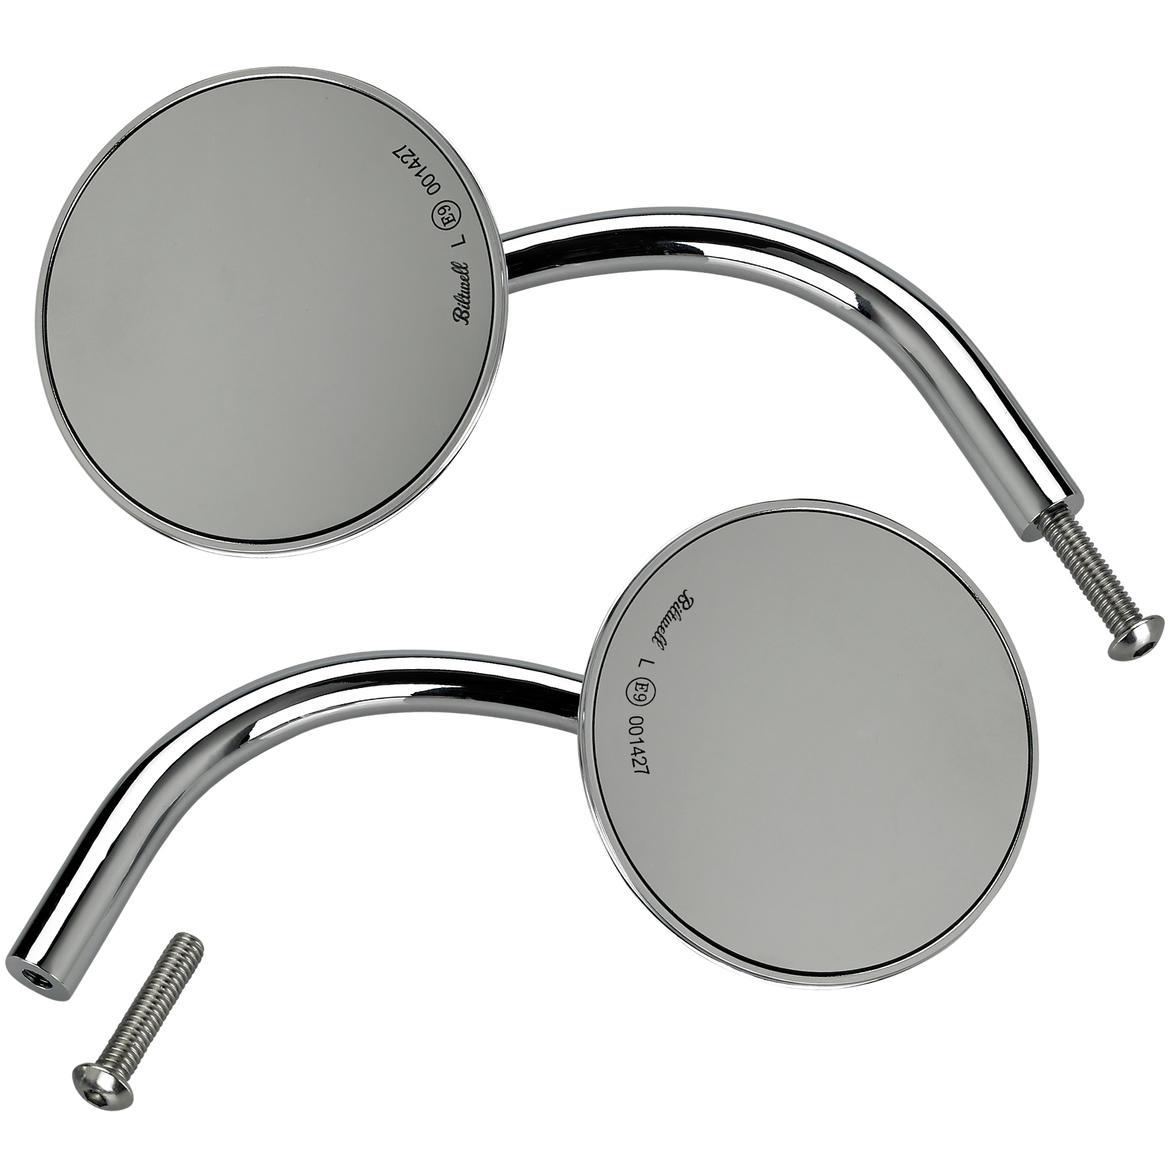 Utility Mirror Round CE Perch Mount - Chrome